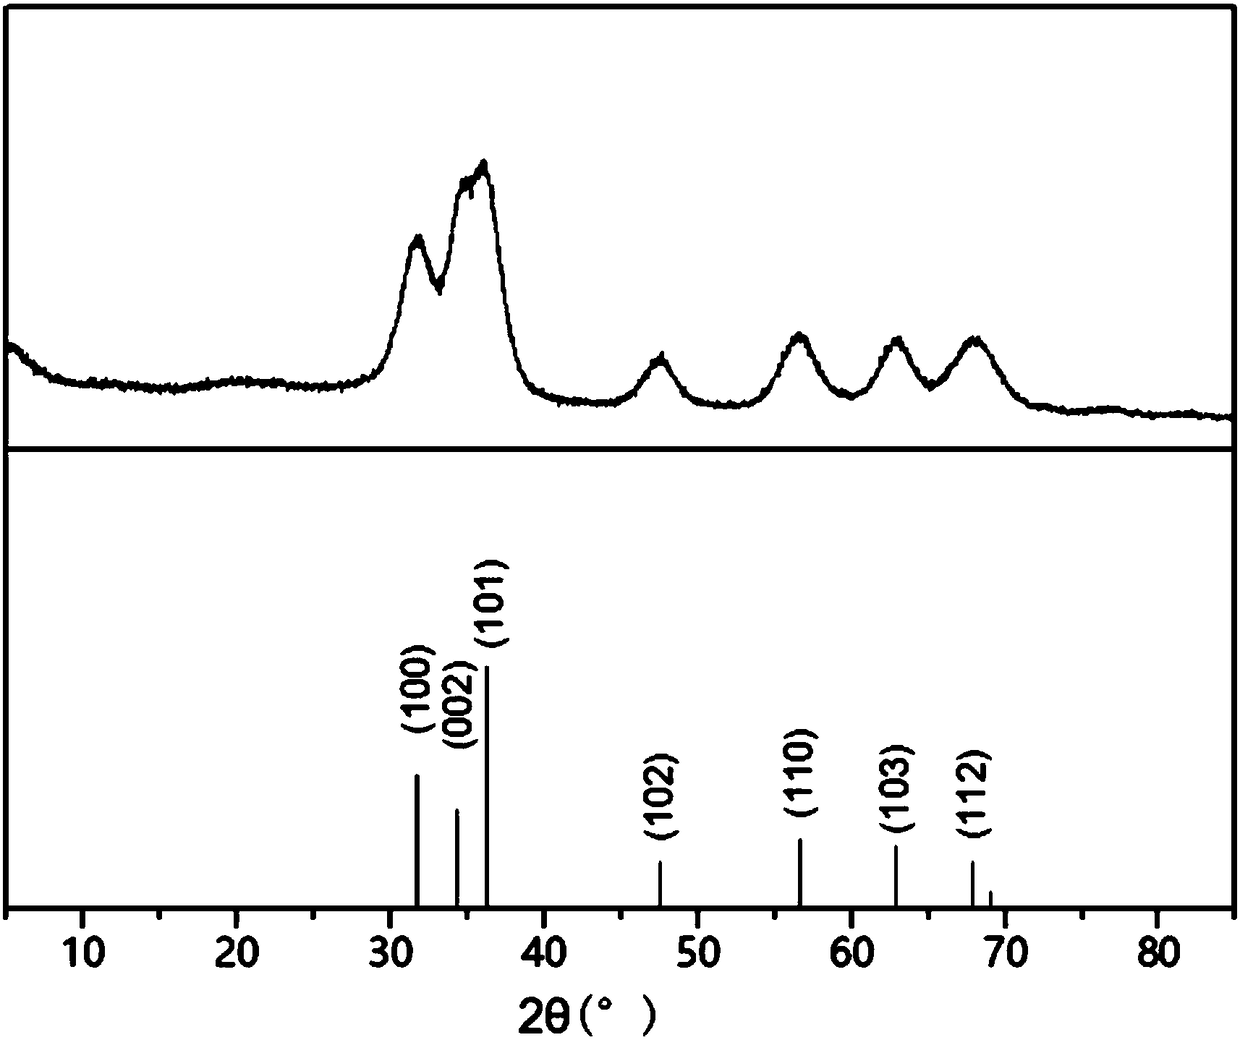 Transparent zinc oxide liquid phase dispersion preparing method